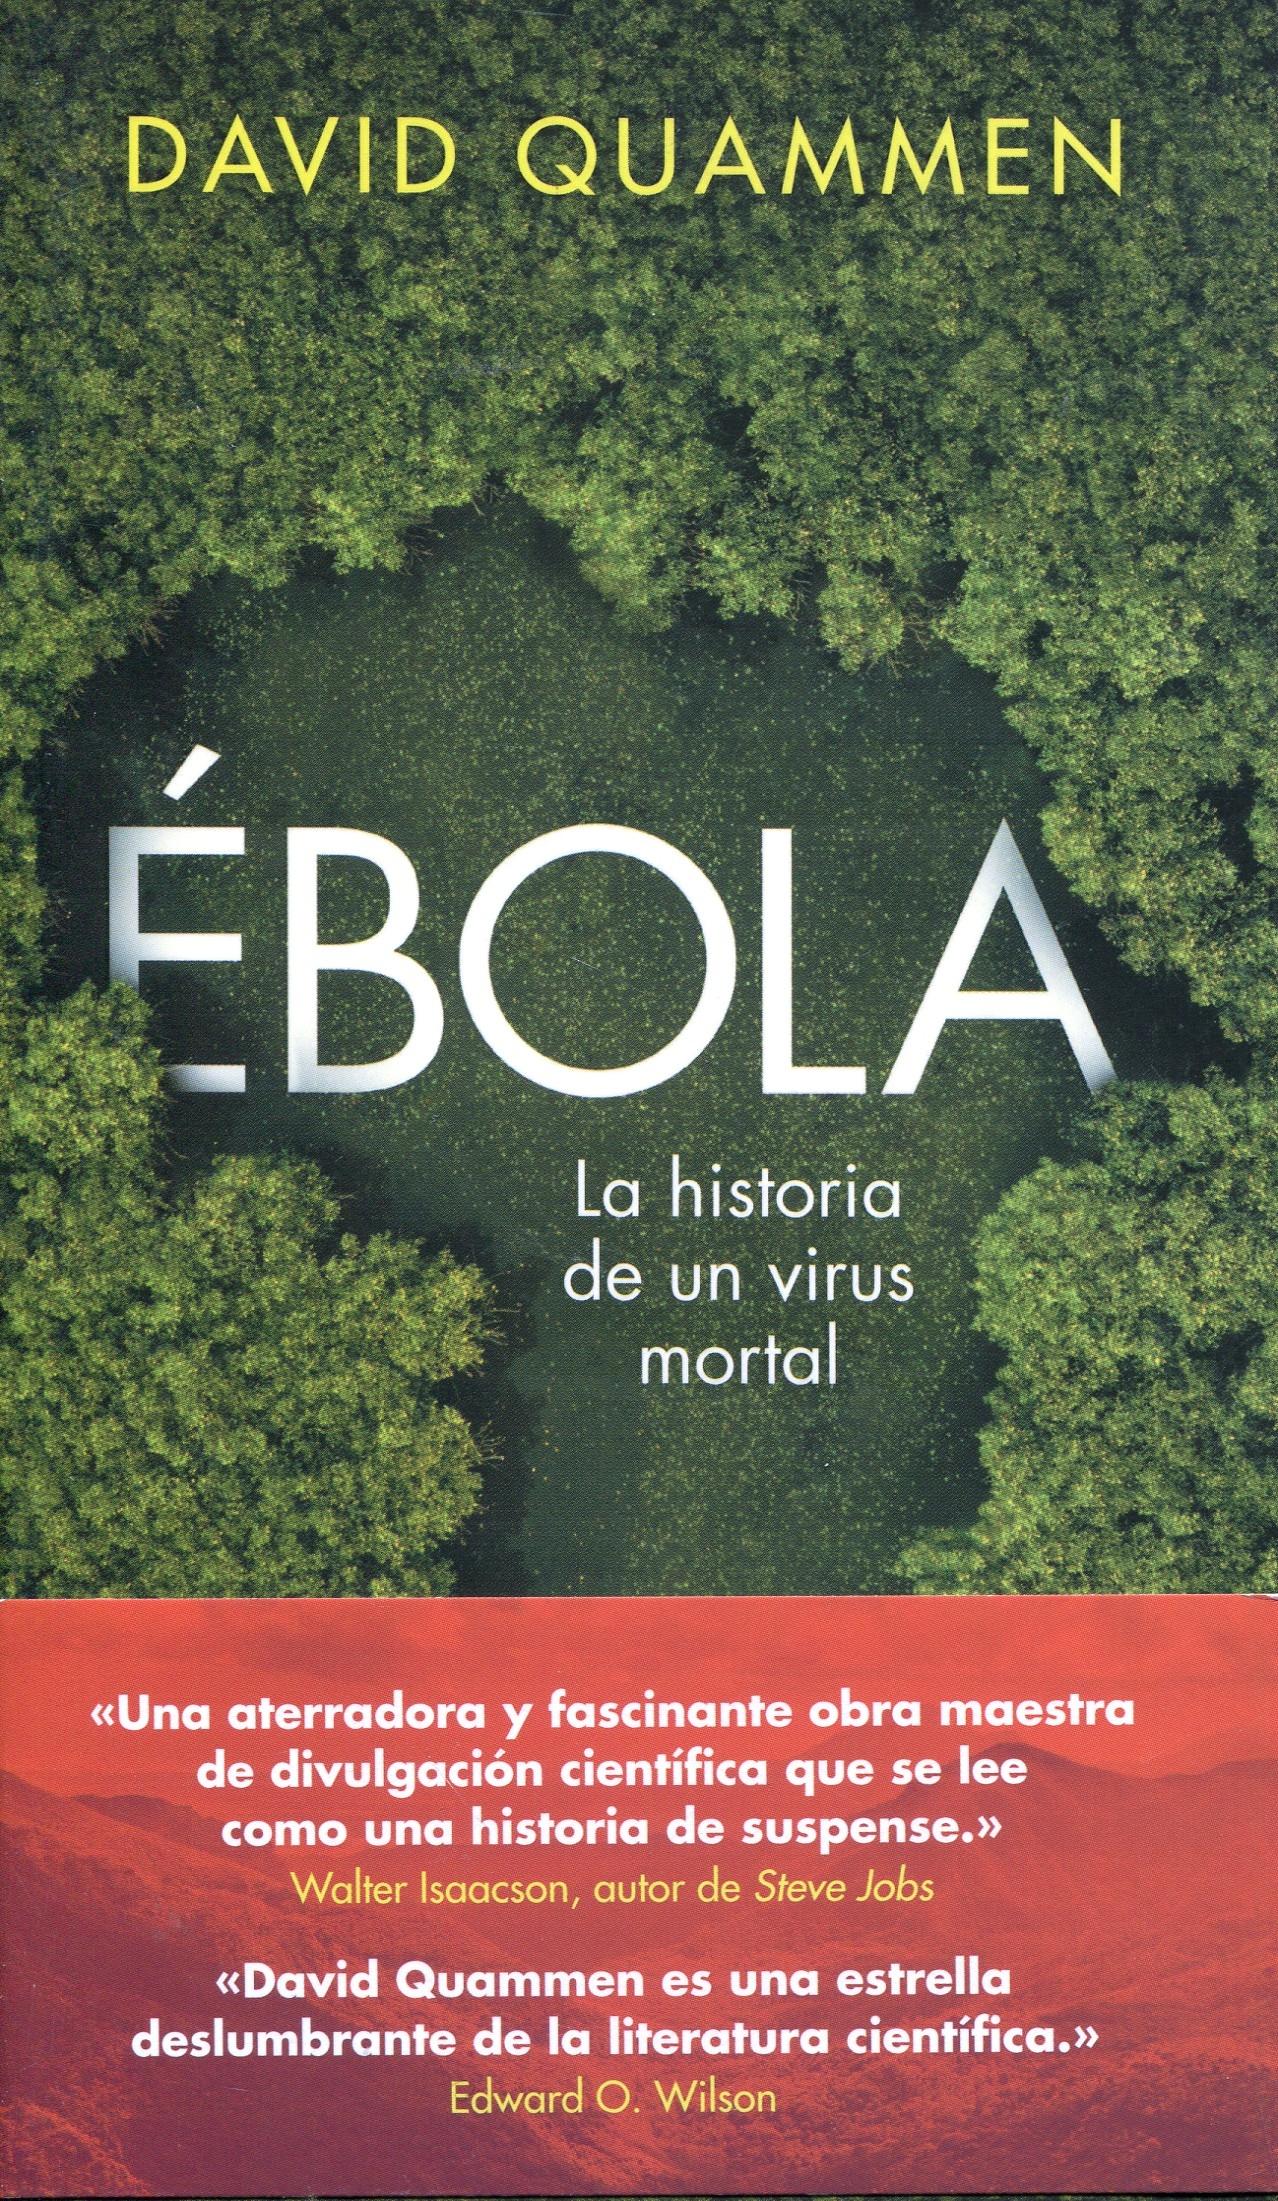 Ébola "La historia de un virus mortal"